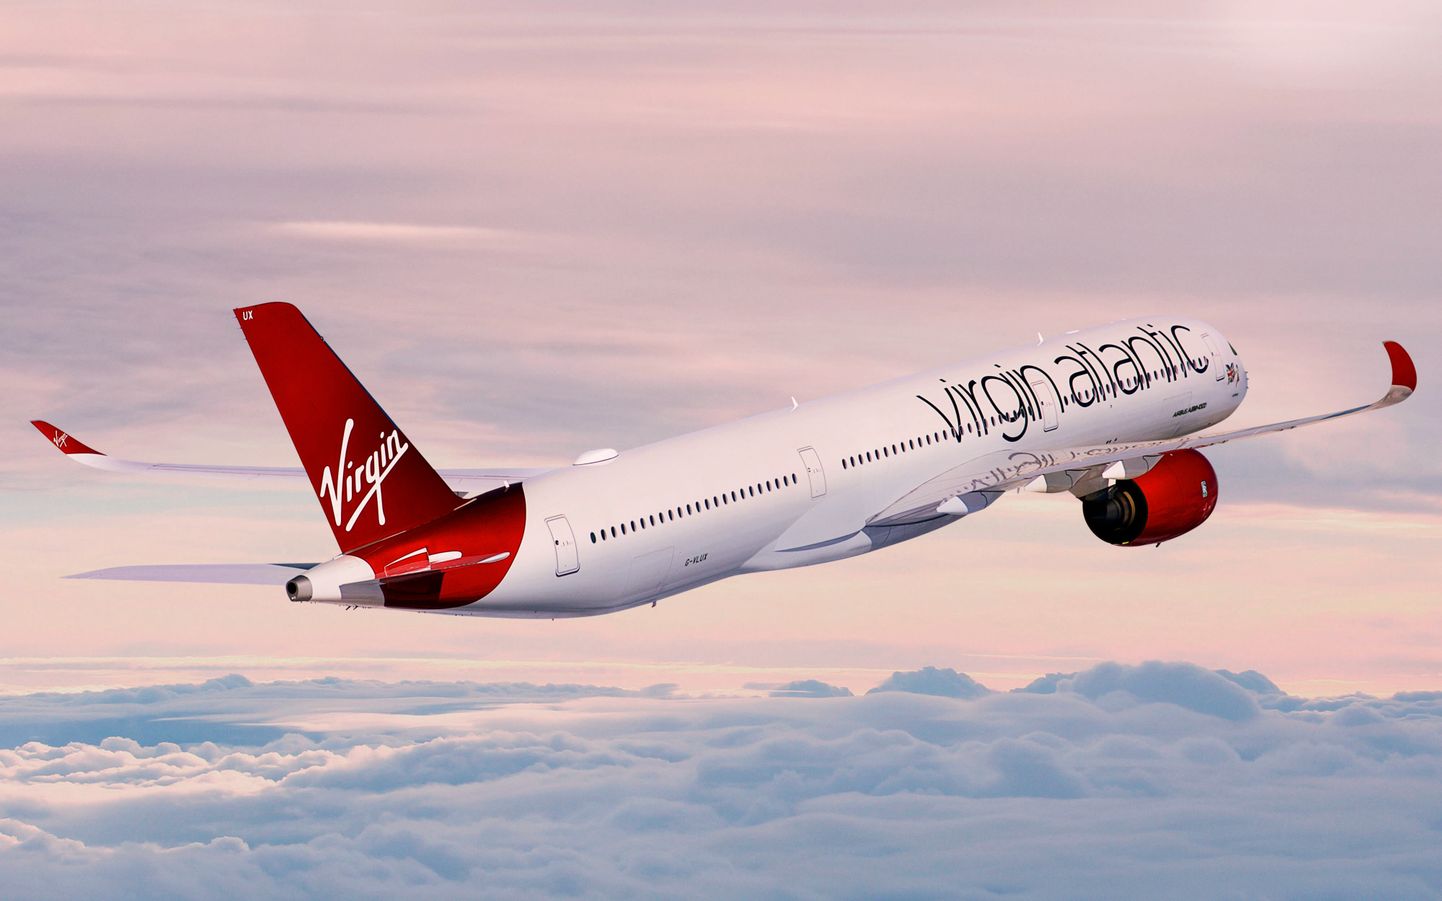 Üle-Atlandi lennul kulges Virgin Atlanticu lennuk helist kiiremini ja seda tänu väga nobedale jugavoolule.